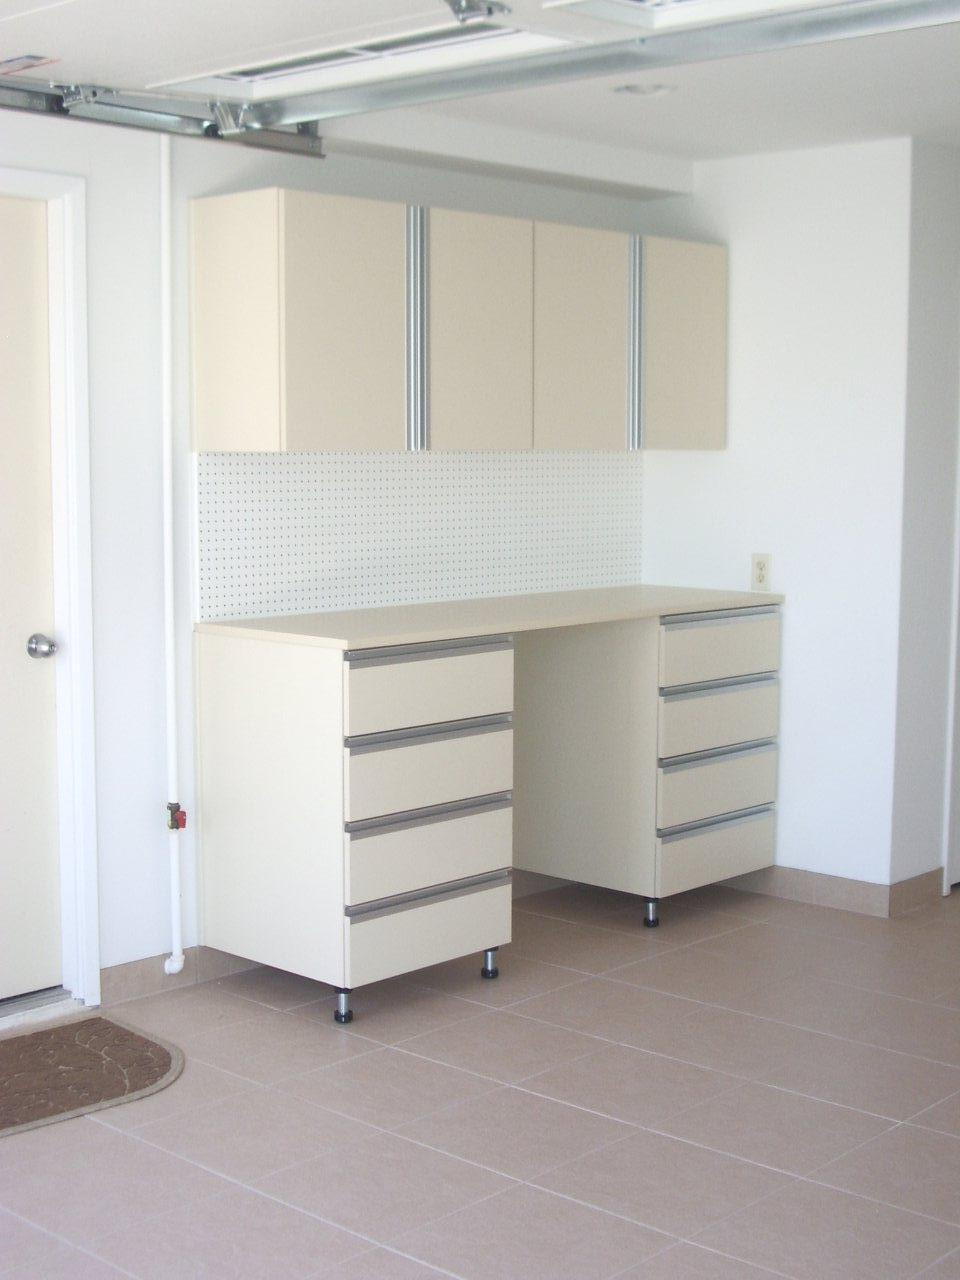 Best ideas about Storage Cabinets Garage
. Save or Pin Garage storage cabinets Now.